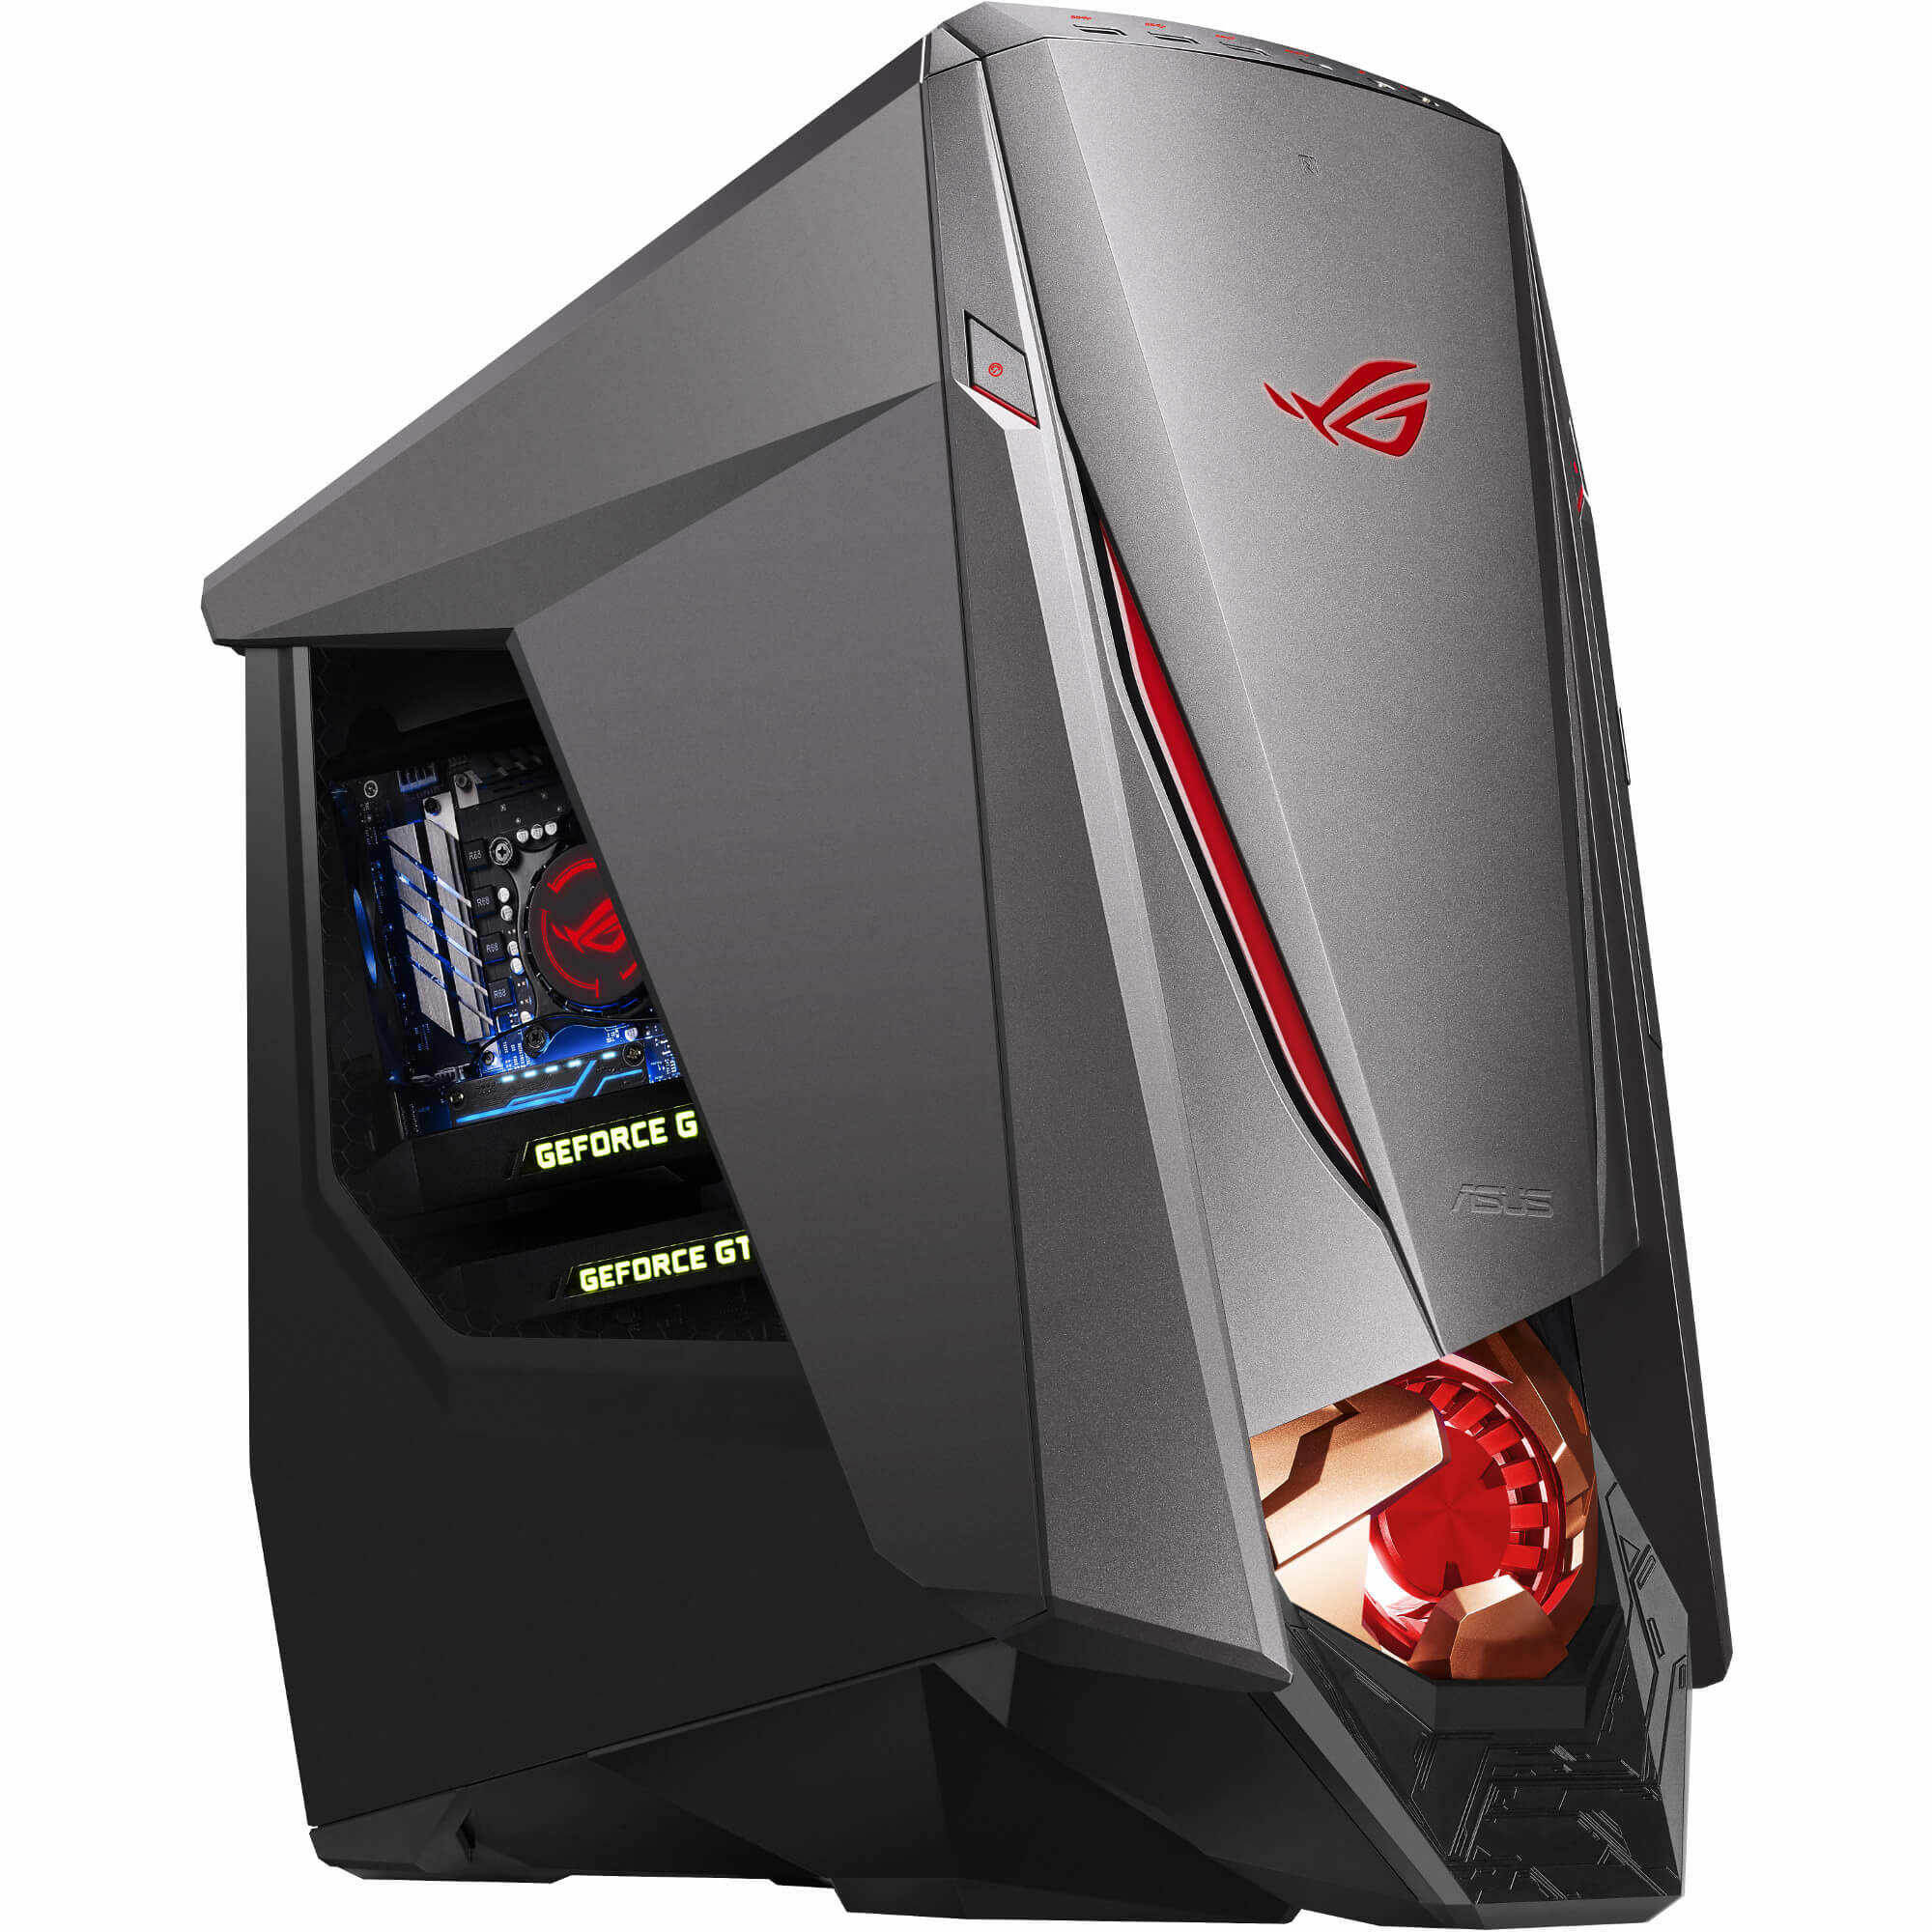 Sistem Desktop PC Gaming Asus GT51CA-RO001T, Intel Core i7-6700K, 16GB DDR4, HDD 1TB + SSD 256GB, nVidia GeForce GTX 980 4GB, Windows 10